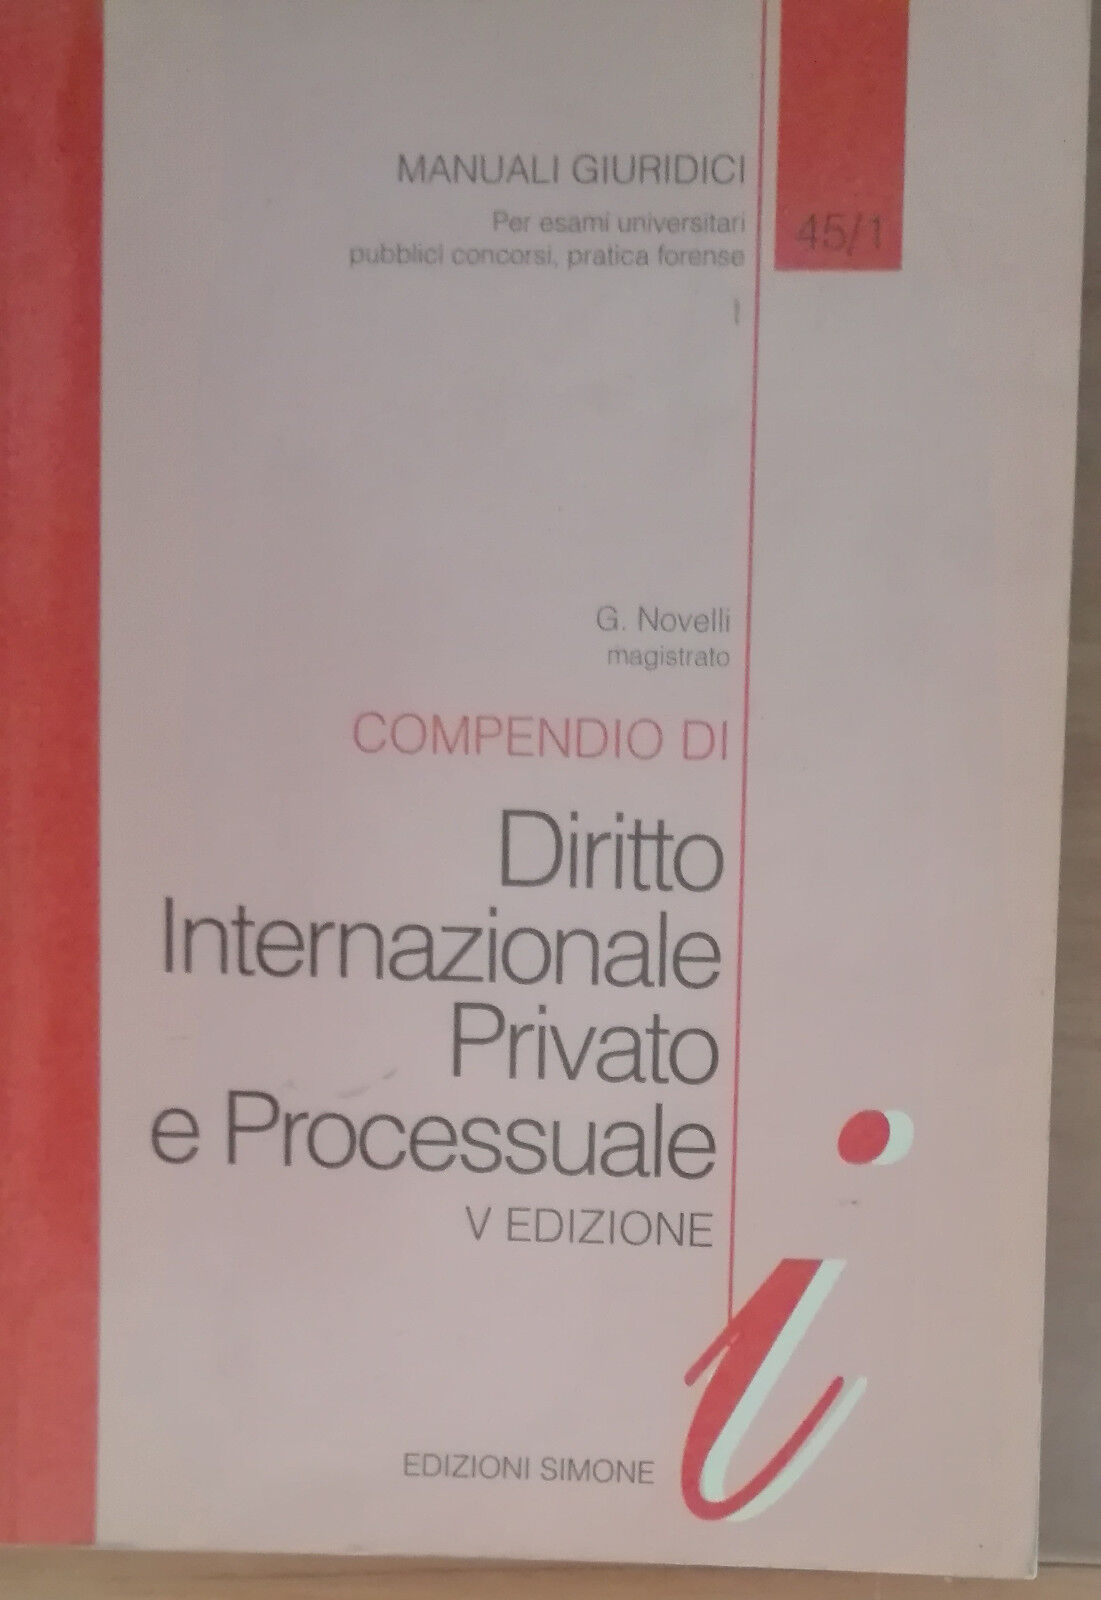 Compendio di diritto internazionale privato e processuale -Novelli-Simone,1997-A